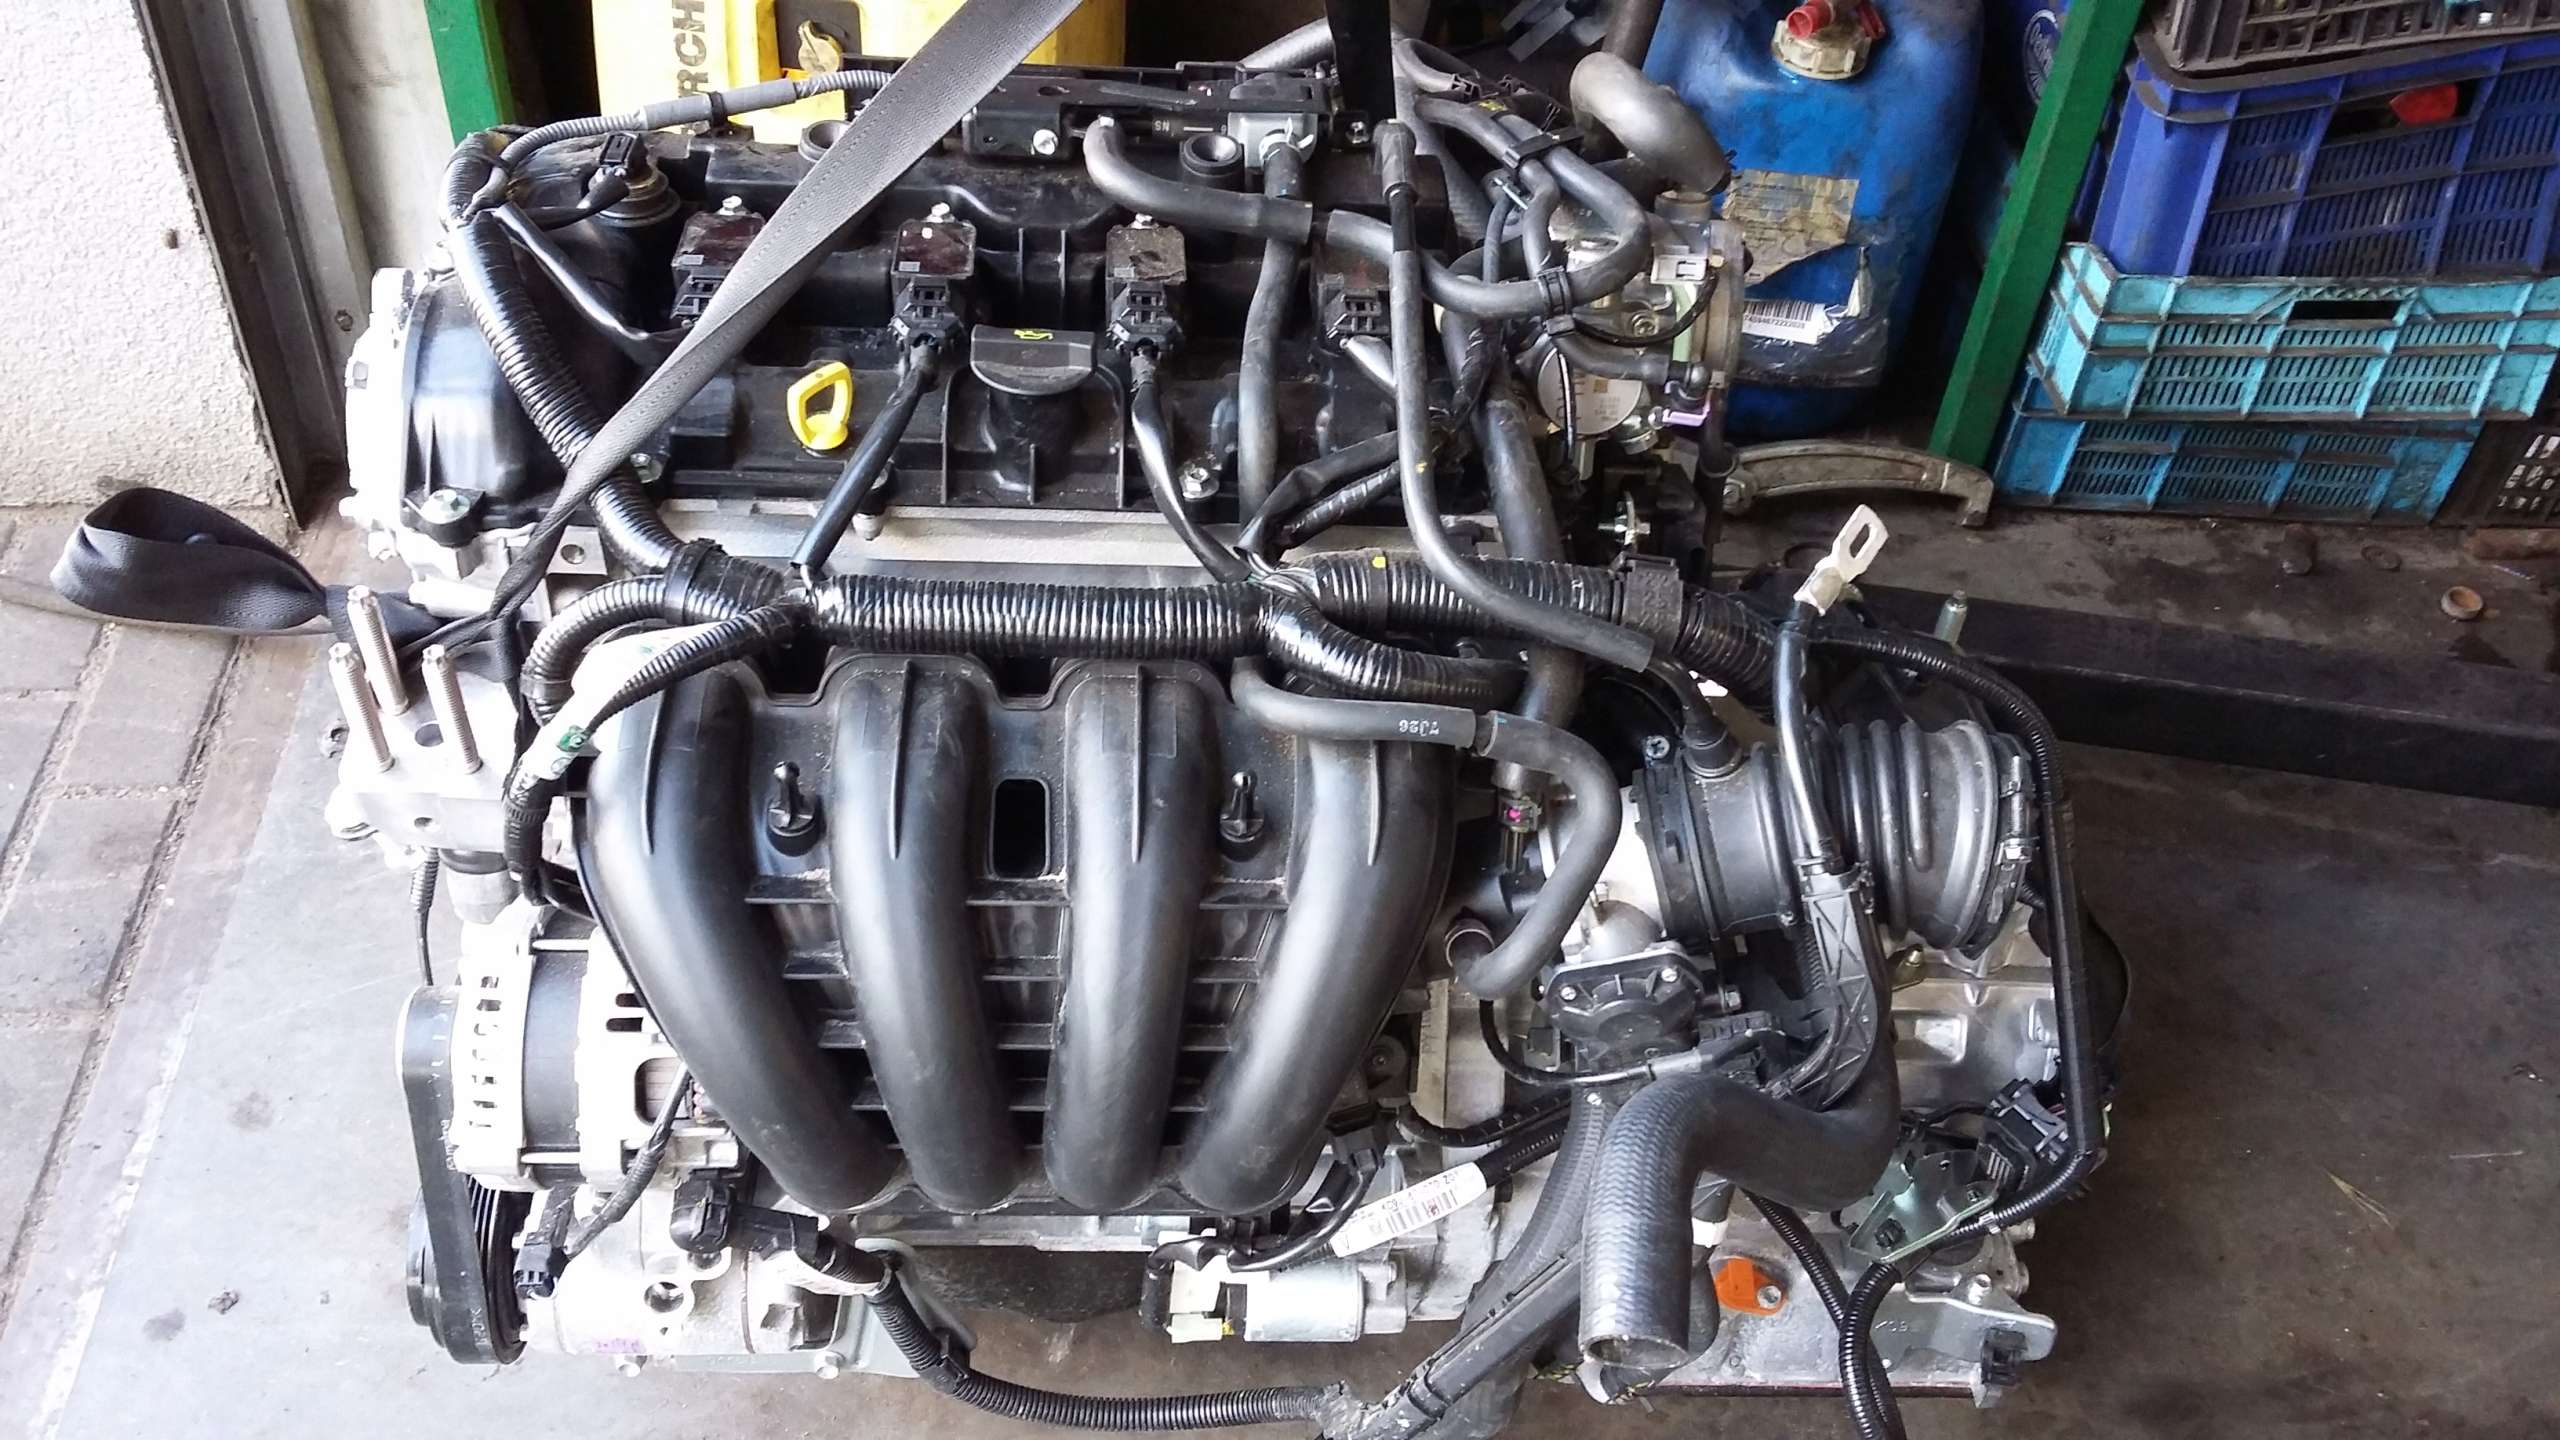 Двигатель мазда сх5 2.5. Мотор Мазда сх5 2.5. Mazda CX-5 двигатель 2.0. Двигатель Мазда СХ 5. Двигатель Мазда cx5 2.5.